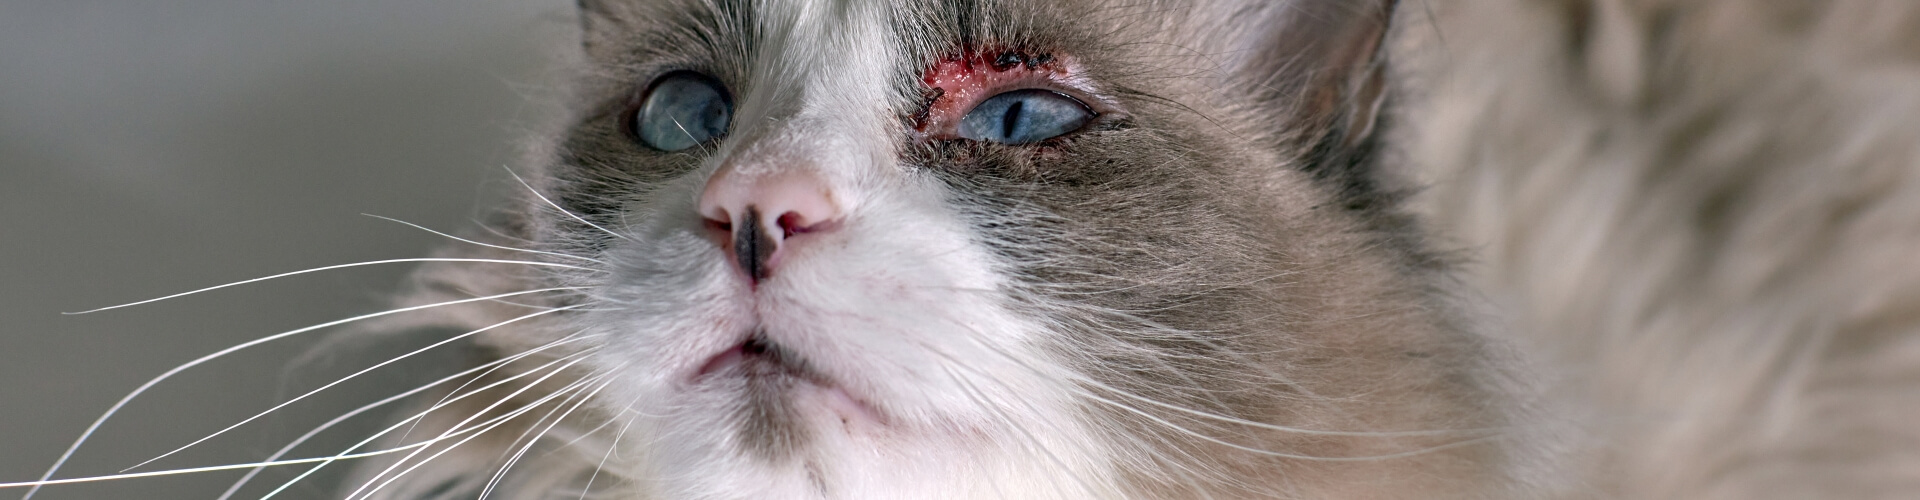 PETPROTECT Magazin: Verletzungen am Katzenauge - Wann muss ich zum Tierarzt?